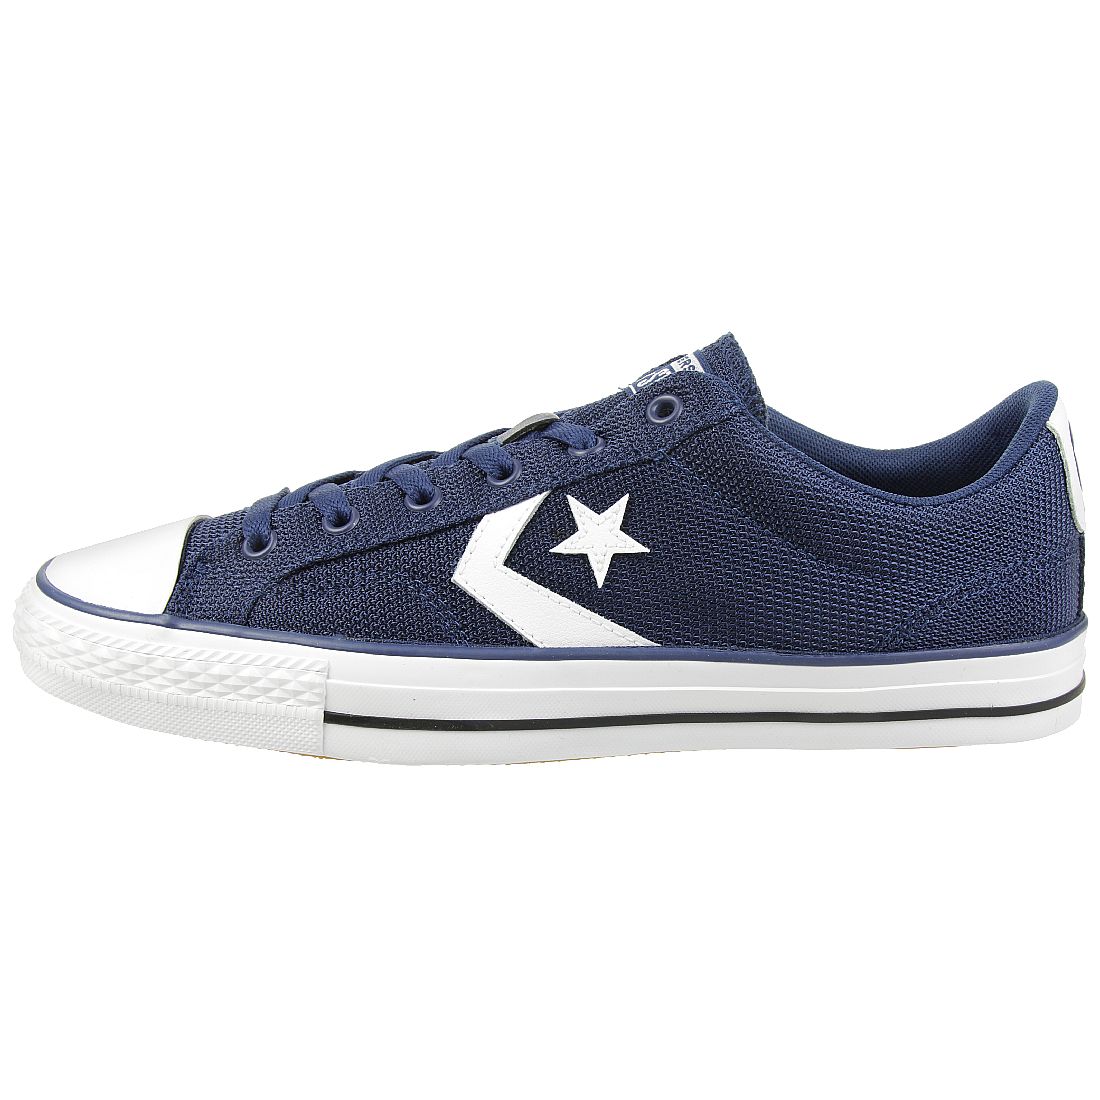 Converse STAR PLAYER OX Schuhe Sneaker 160582C blau